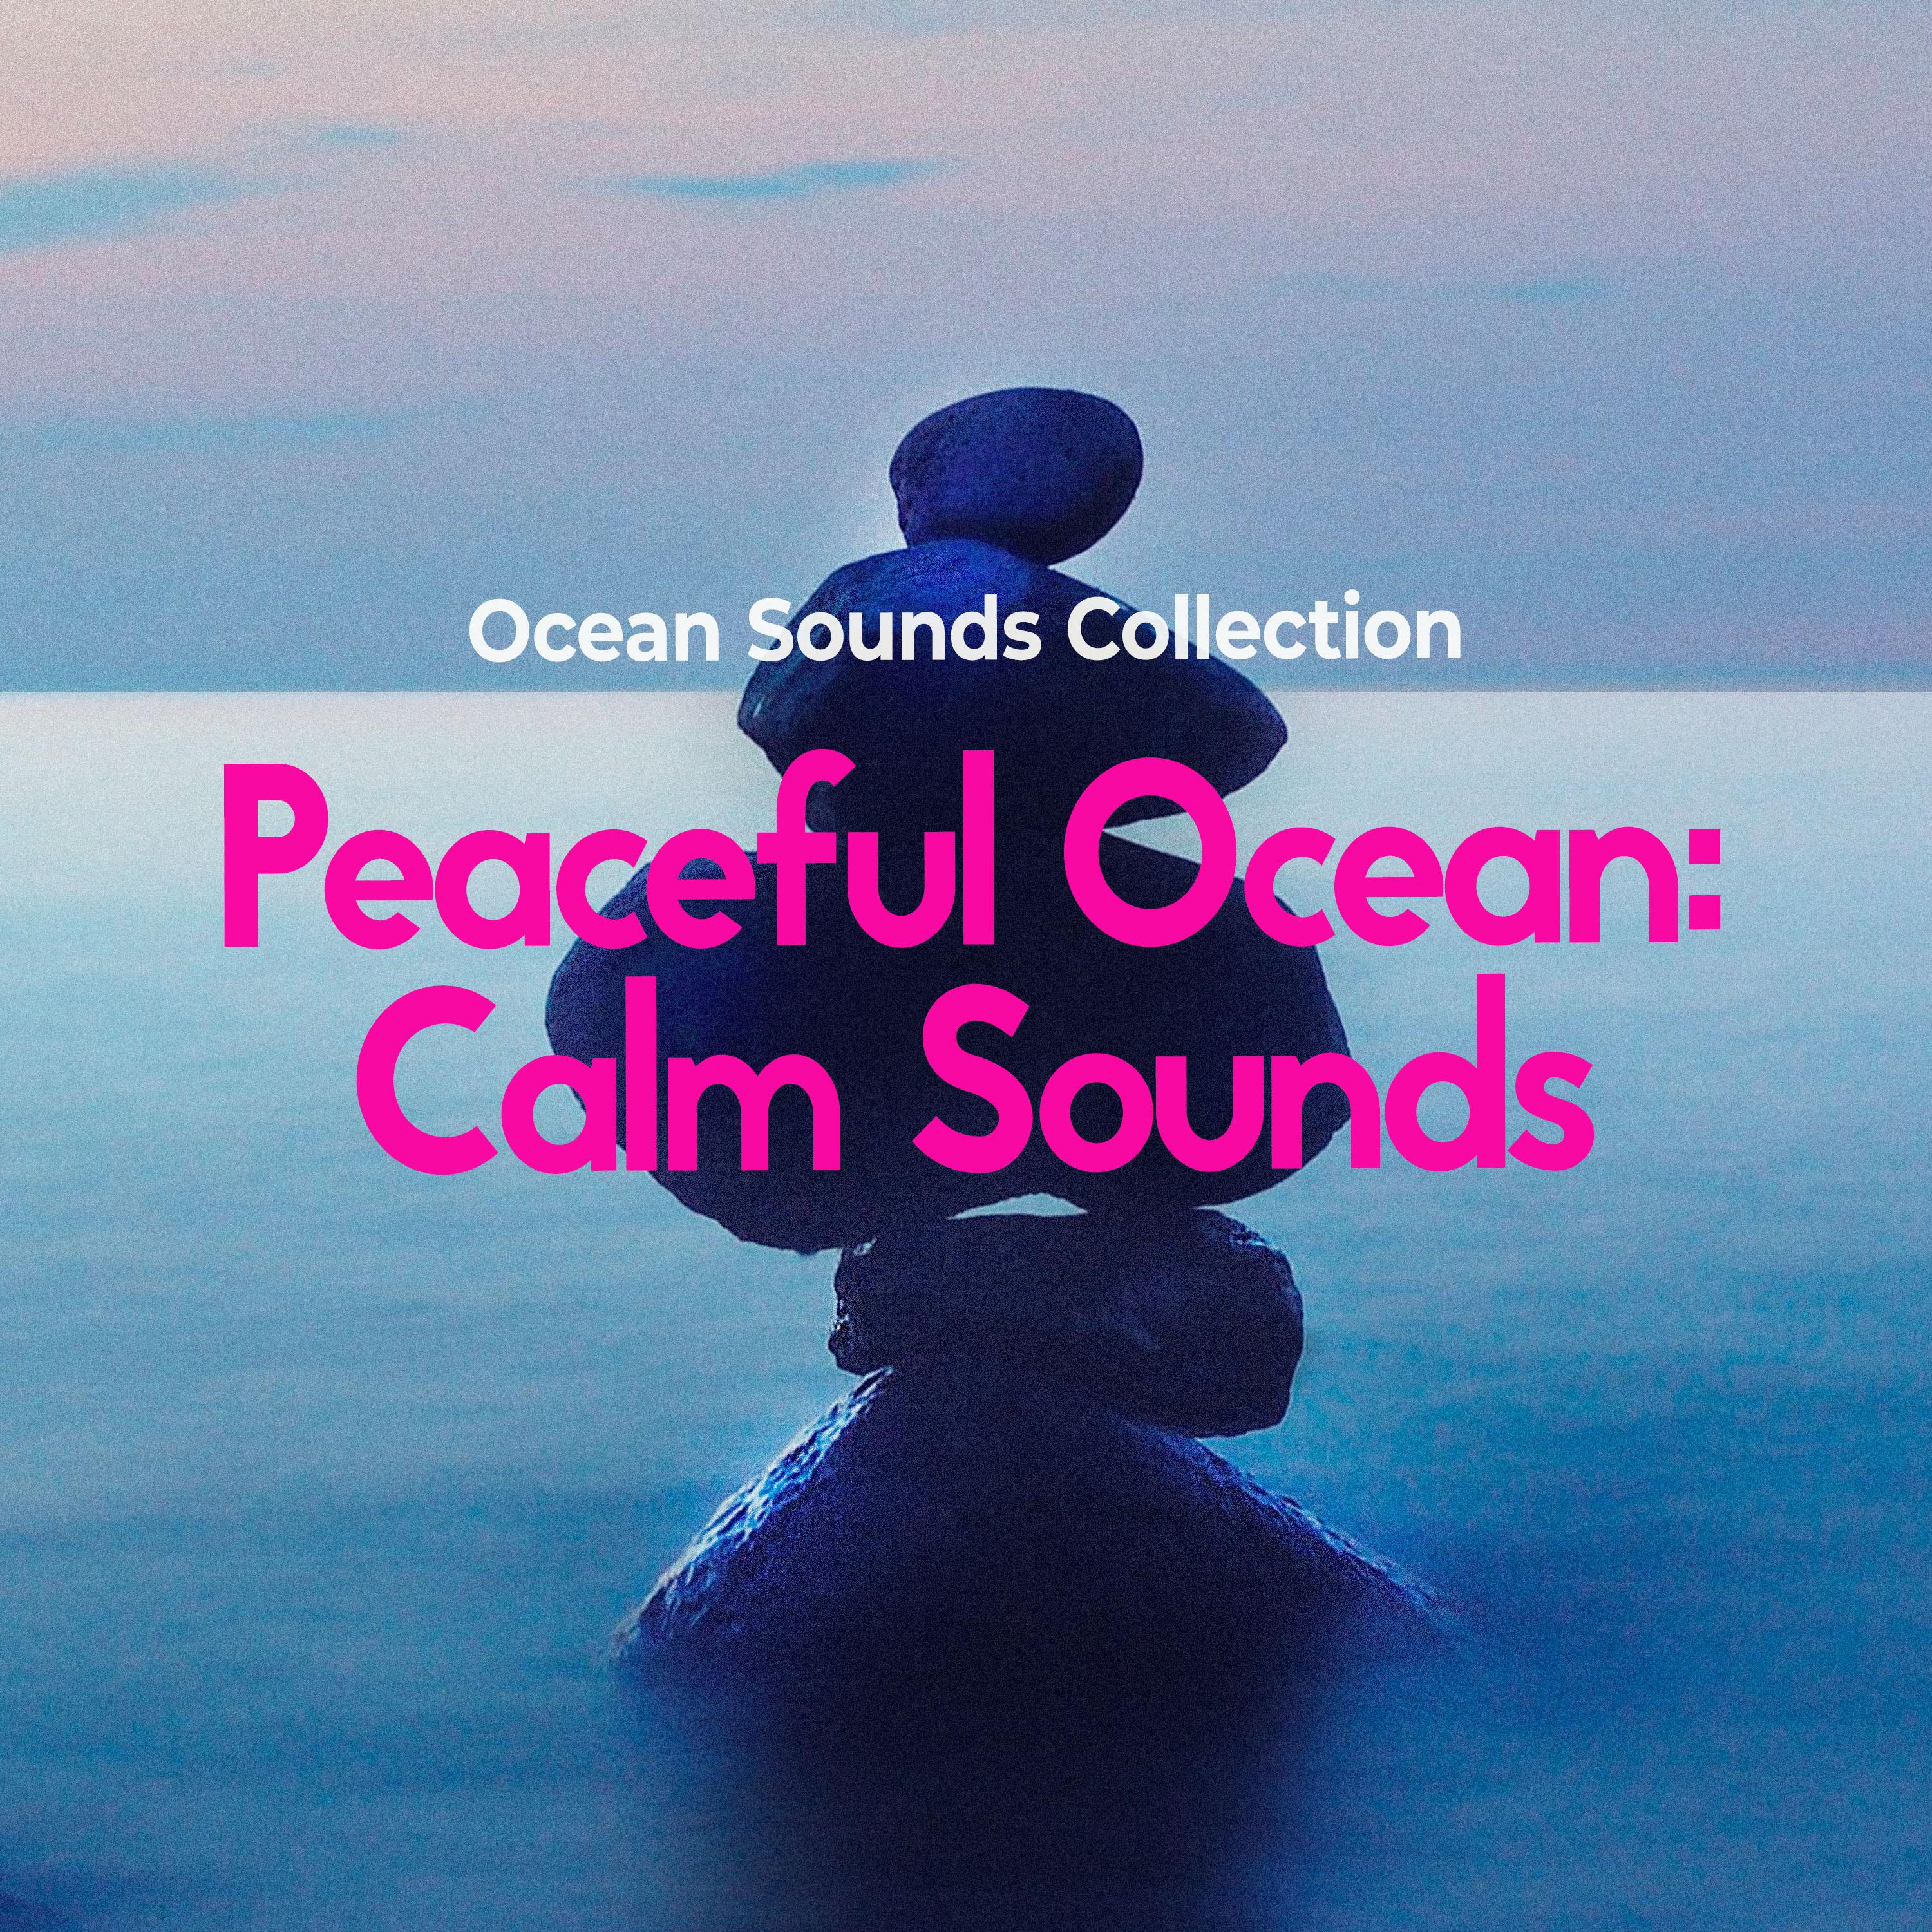 Peaceful Ocean: Calm Sounds